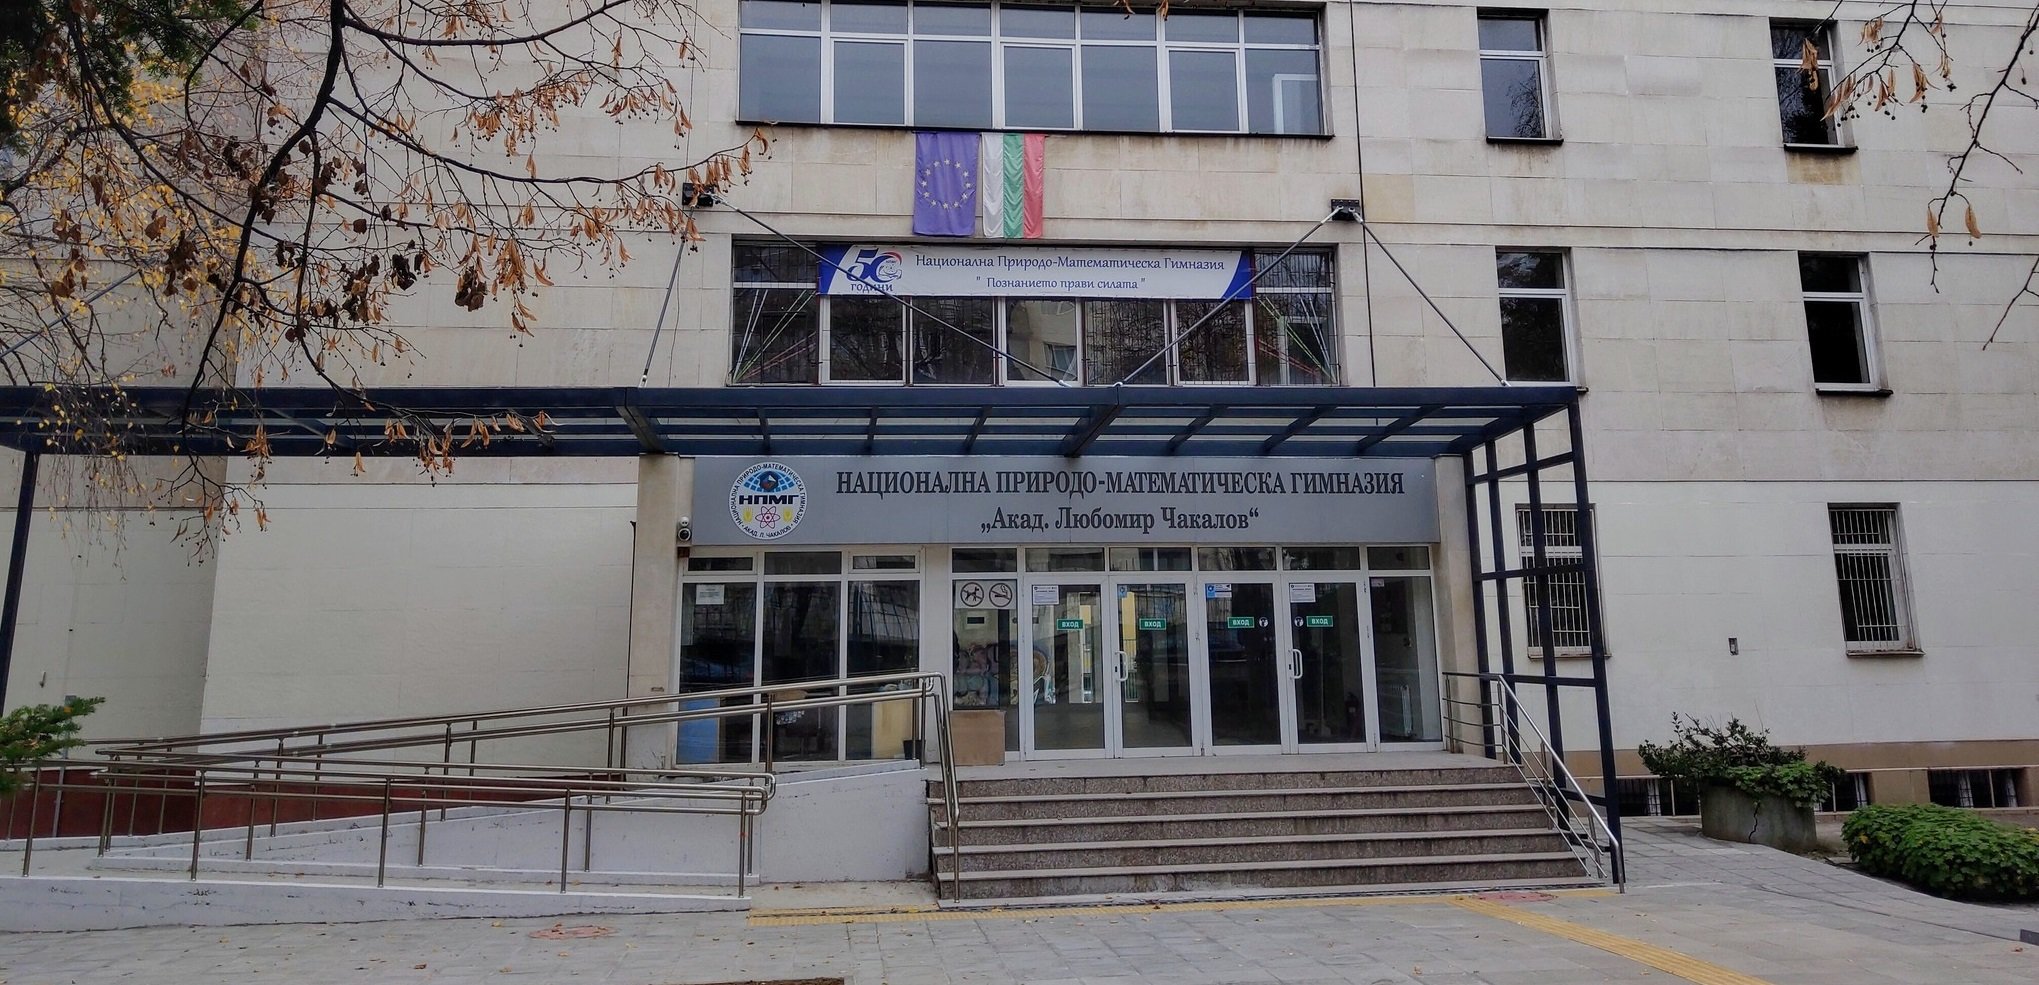 Отборът на Националната природо-математическа гимназия донесе сребърен медал за България